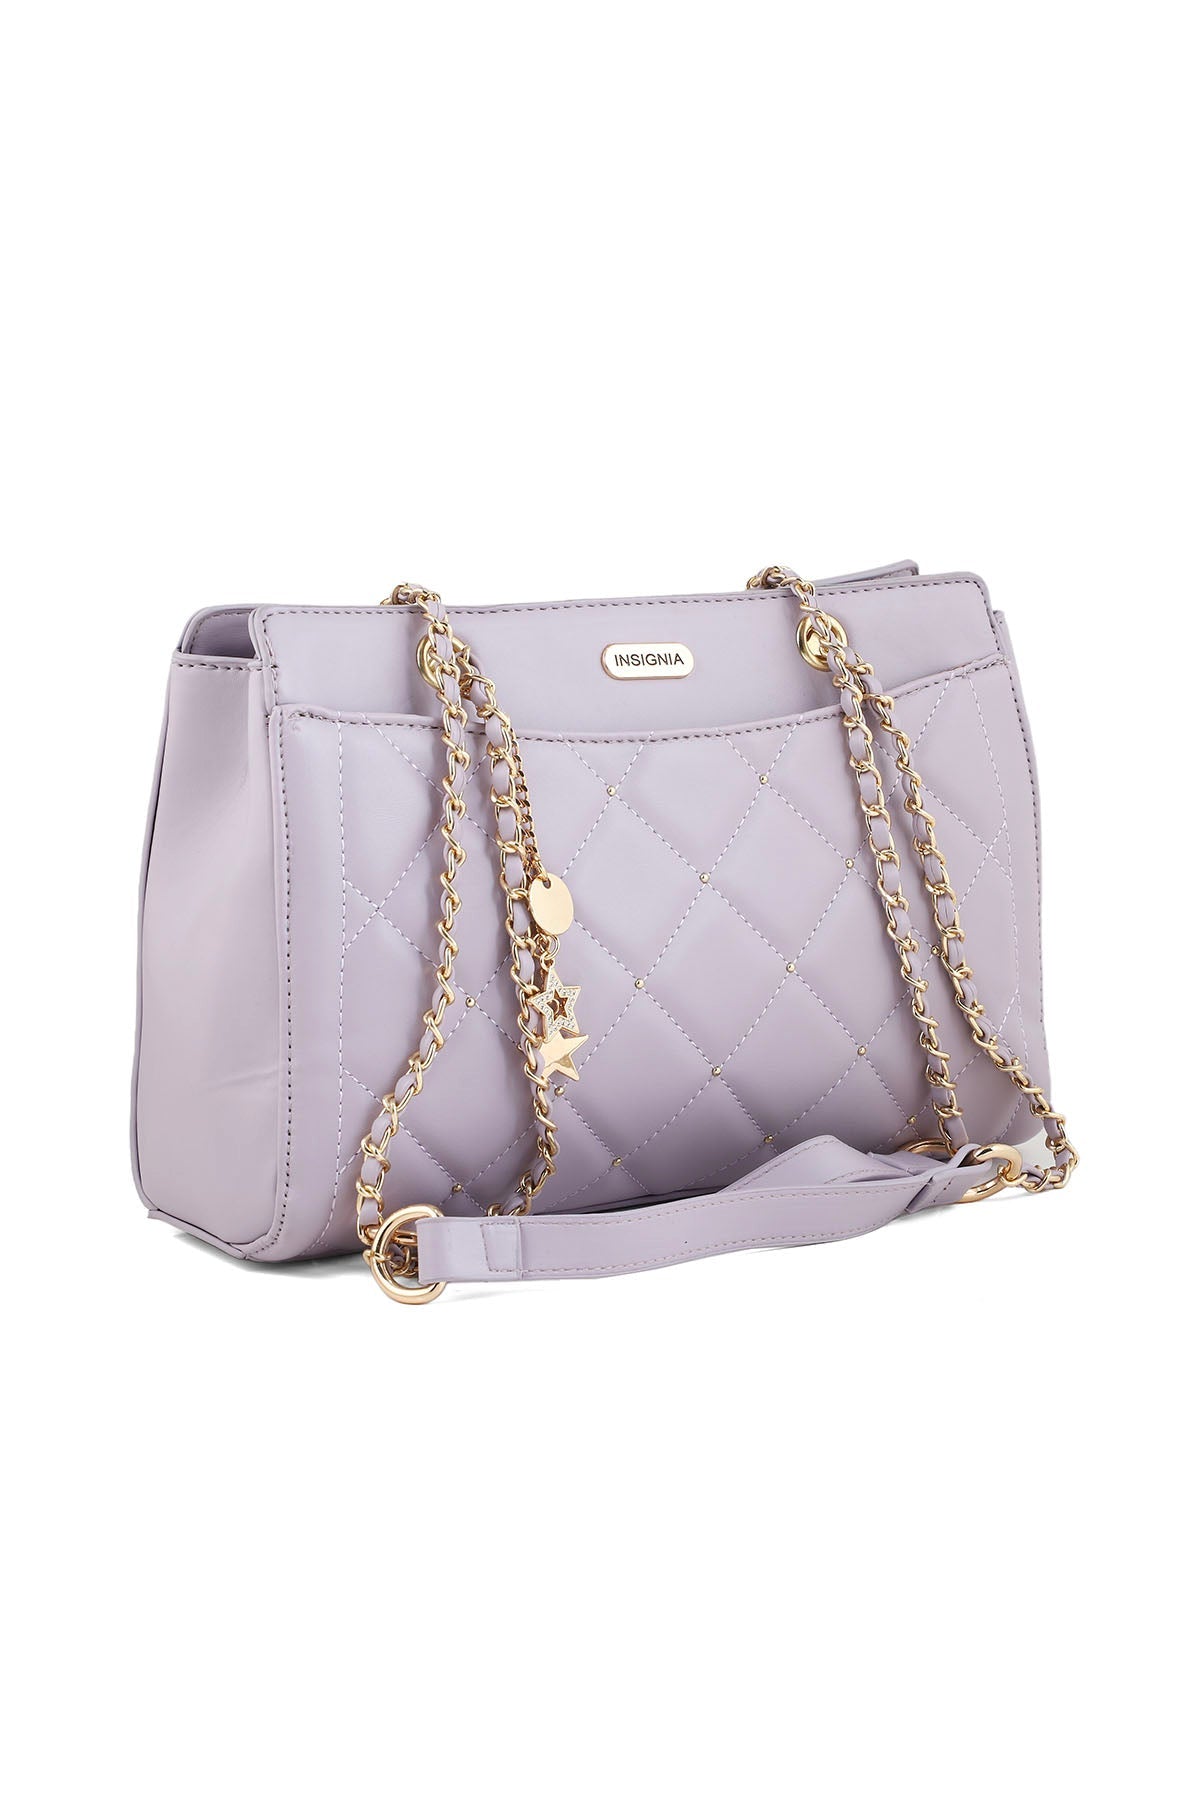 Baguette Shoulder Bags B15038-Purple